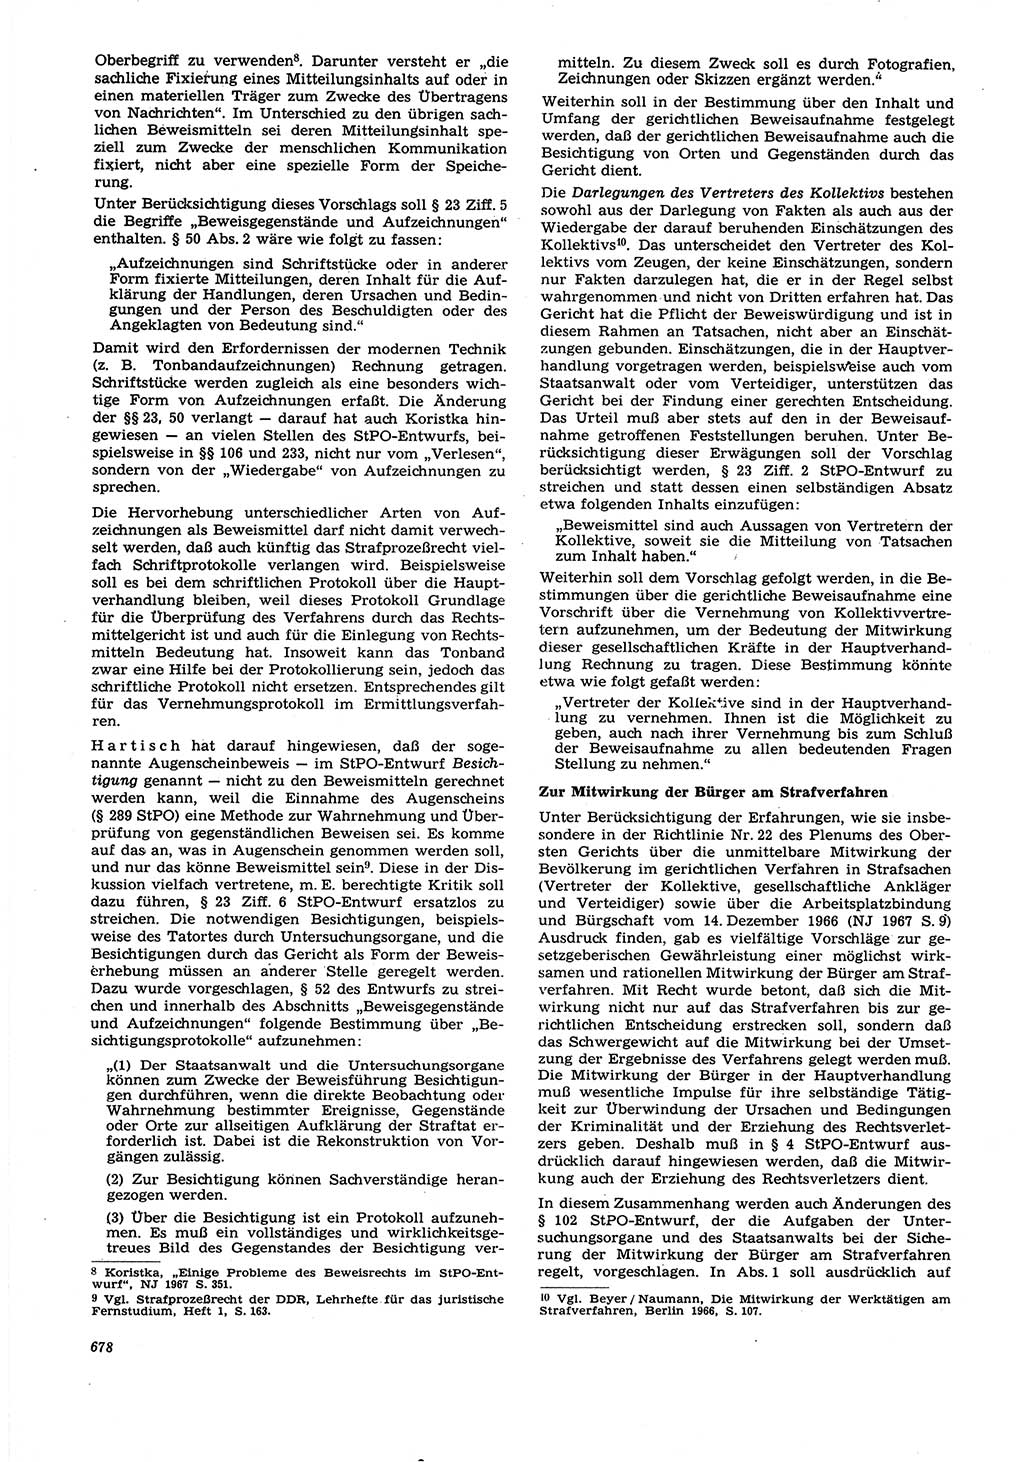 Neue Justiz (NJ), Zeitschrift für Recht und Rechtswissenschaft [Deutsche Demokratische Republik (DDR)], 21. Jahrgang 1967, Seite 678 (NJ DDR 1967, S. 678)